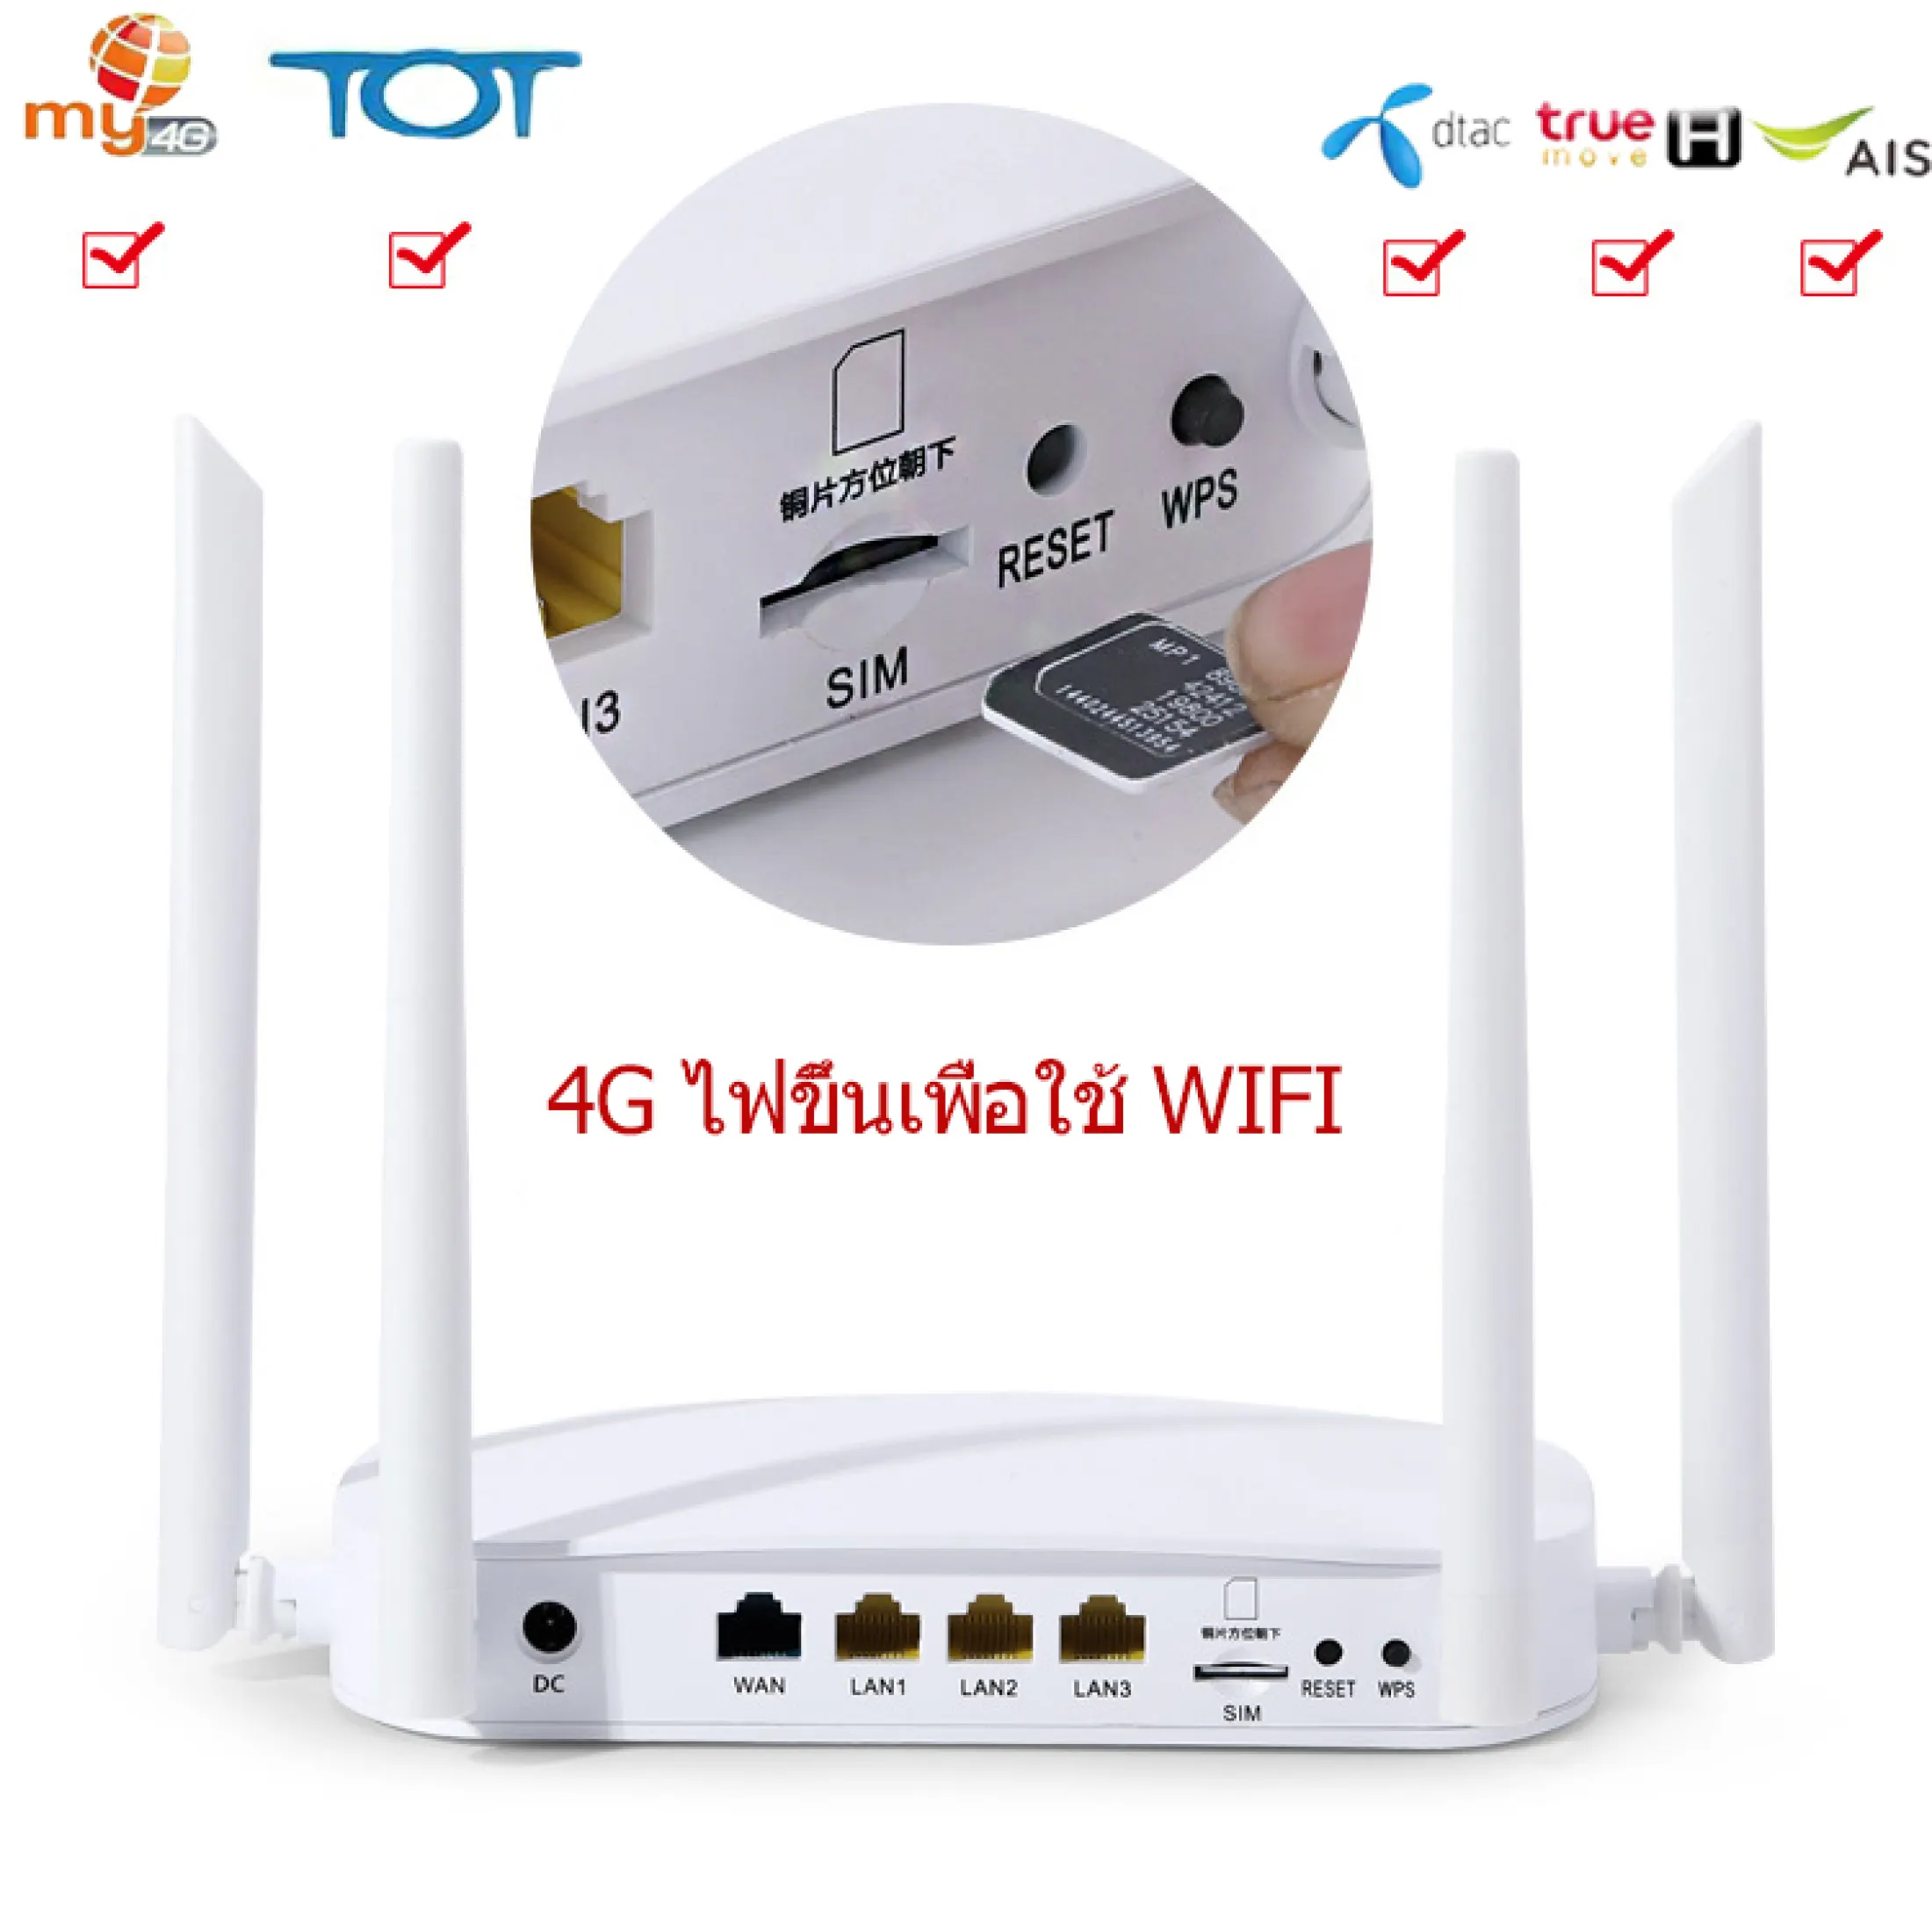 เกี่ยวกับสินค้า 4G เราเตอร์ ใส่ซิมปล่อย Wi-Fi 300Mbps 4G LTE sim card Wireless Router รองรับ 4G ทุกเครือข่าย รองรับการใช้งาน Wifi ได้พร้อมกัน 32 